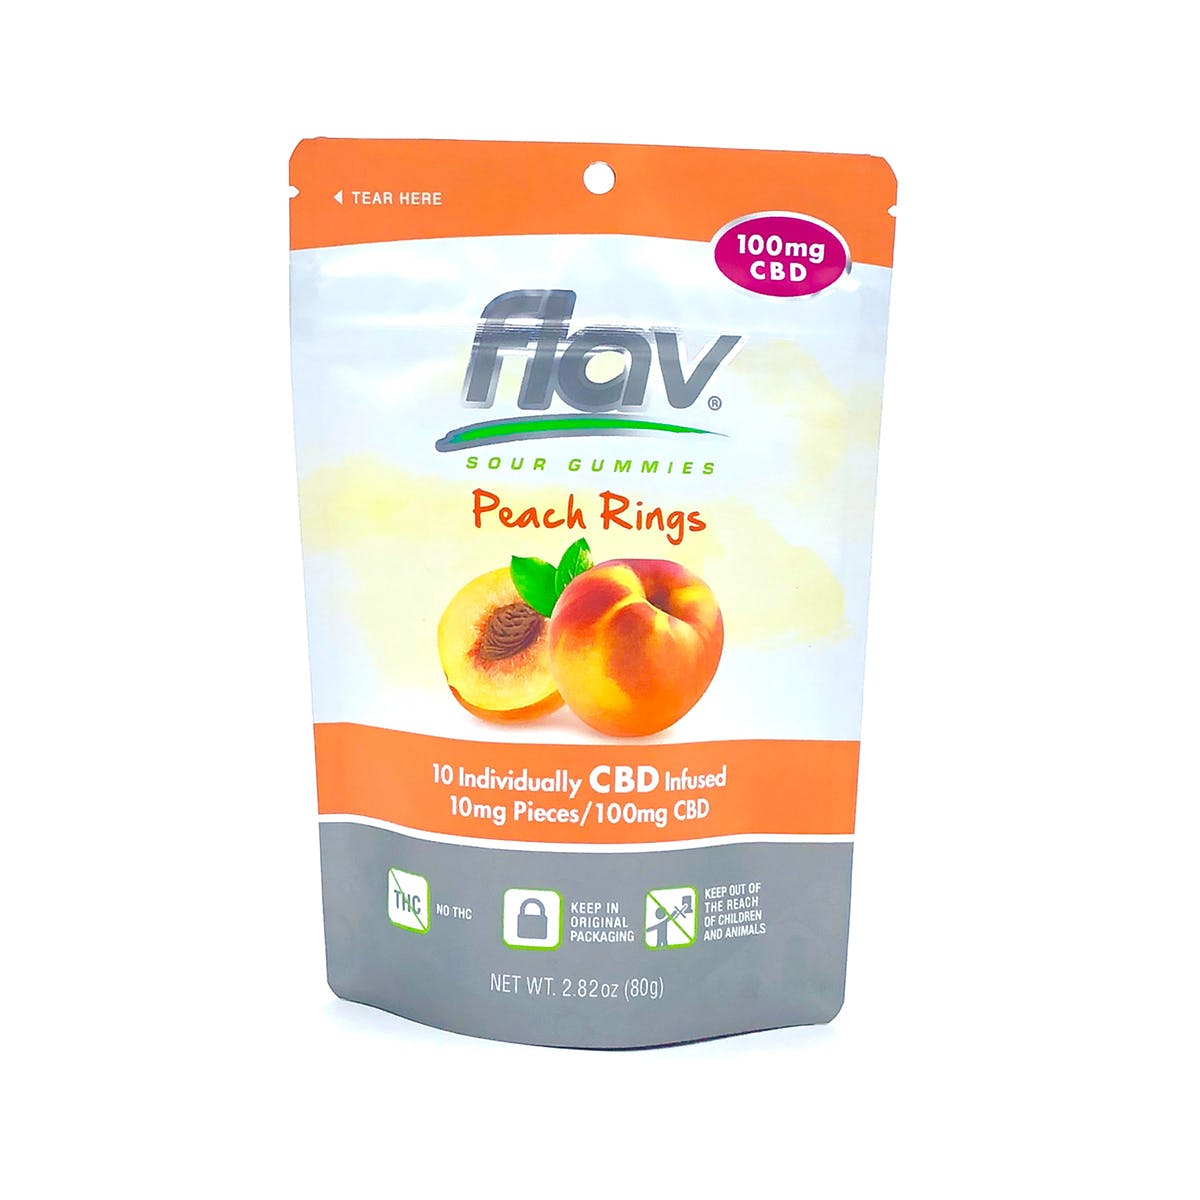 edible-flav-cbd-gummies-peach-rings-100mg